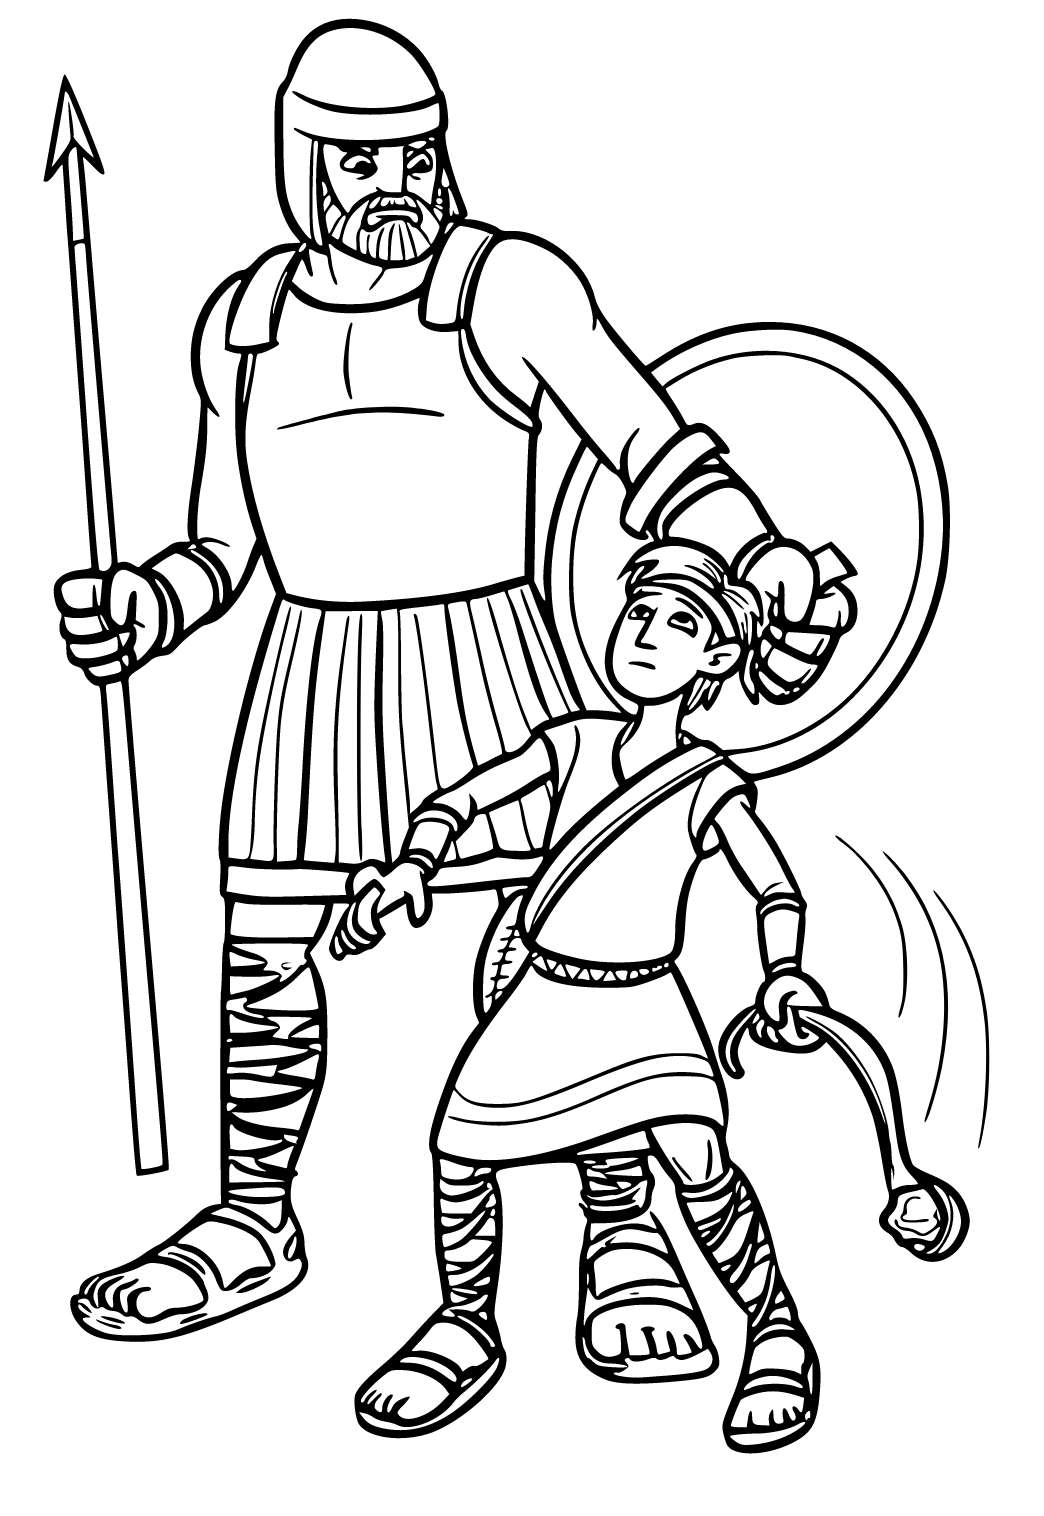 David y Goliath